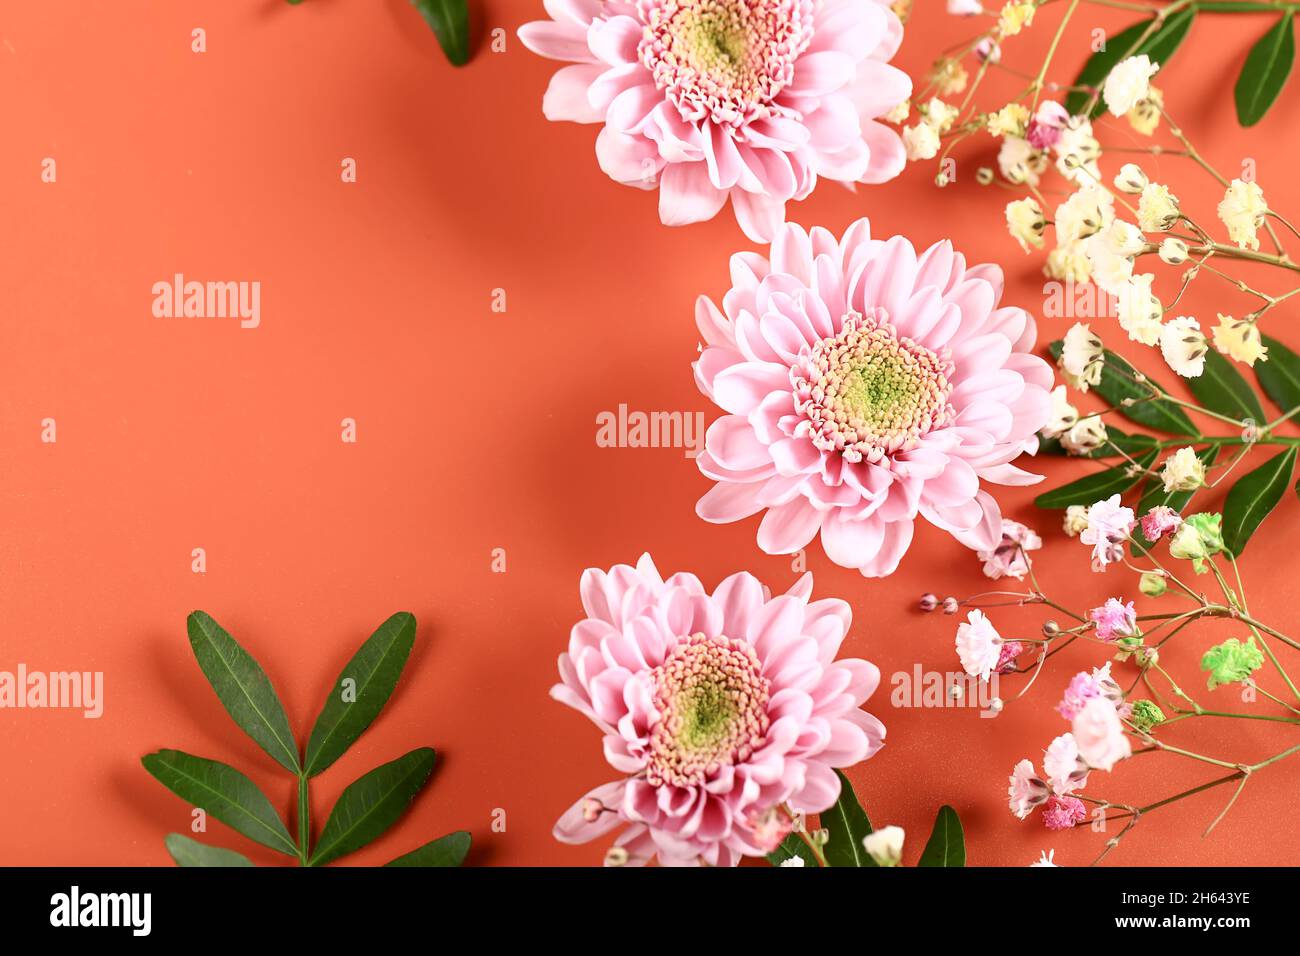 Rosa Chrysanthemen mit grünen Zweigen auf beigefarbenem Hintergrund. Zarte Herbstblumen. Botanische Blume Hintergrund. Stockfoto